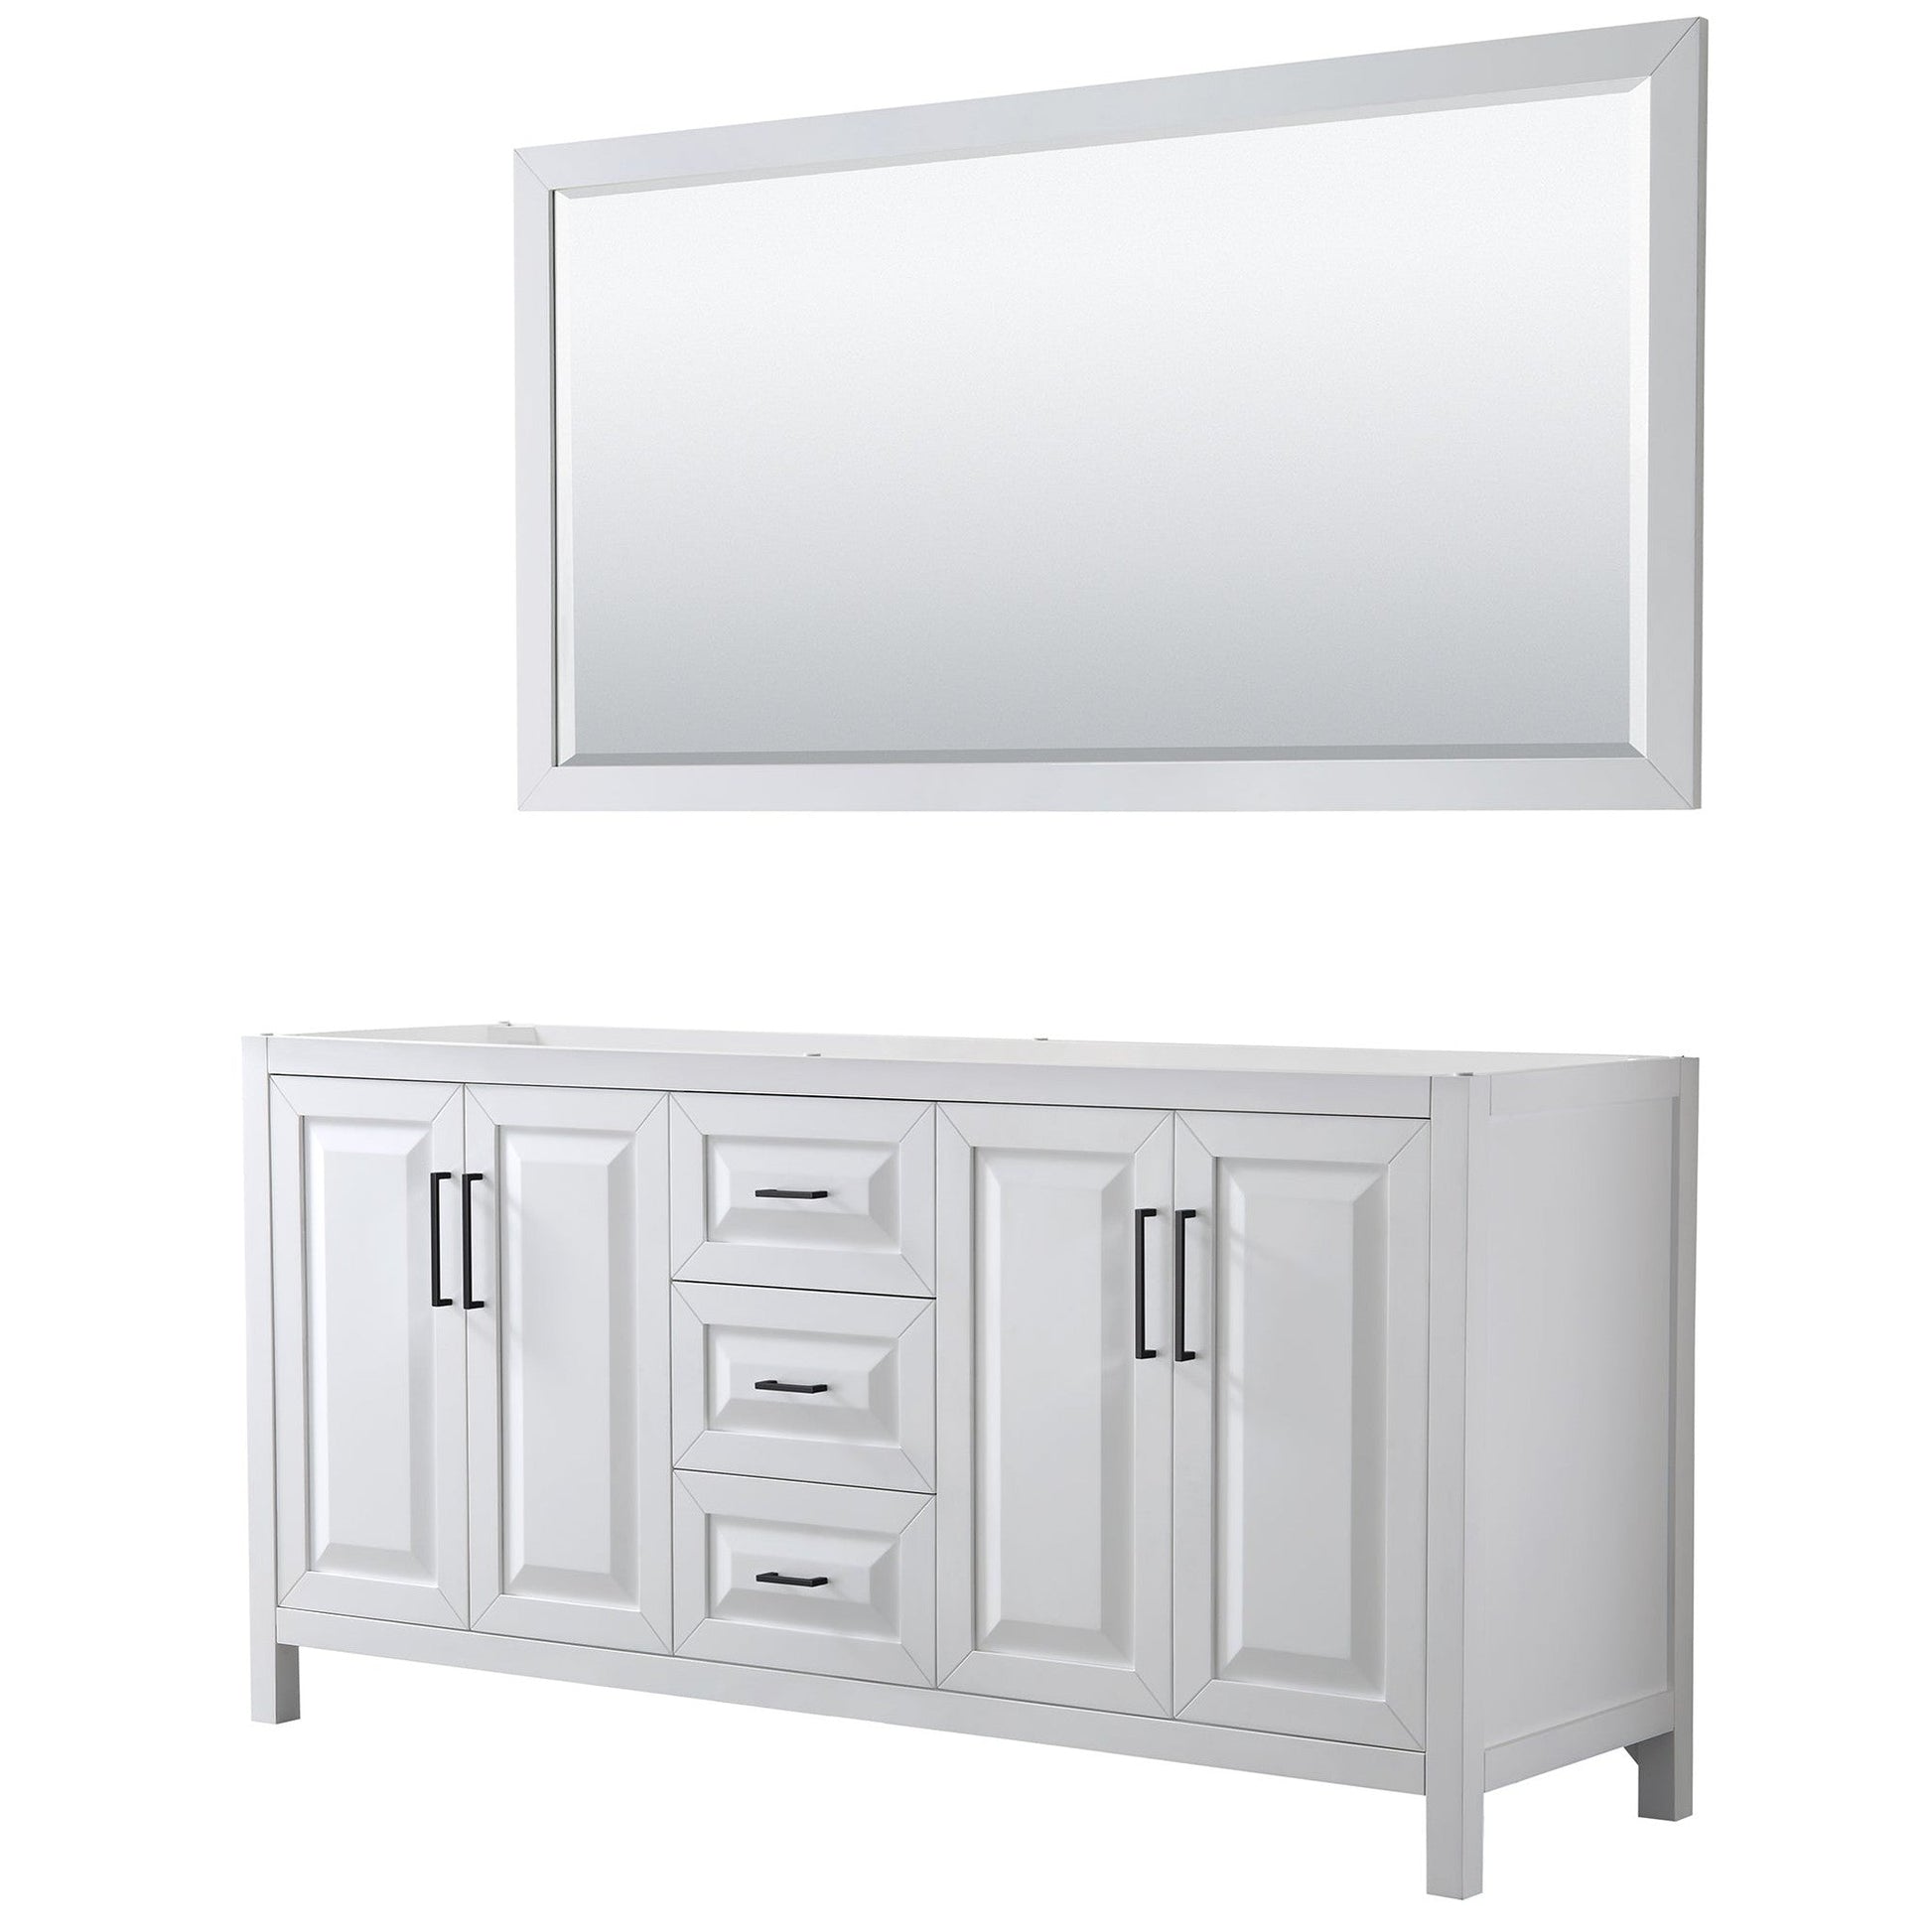 Daria 72" Double Bathroom Vanity in White, No Countertop, No Sink, Matte Black Trim, 70" Mirror